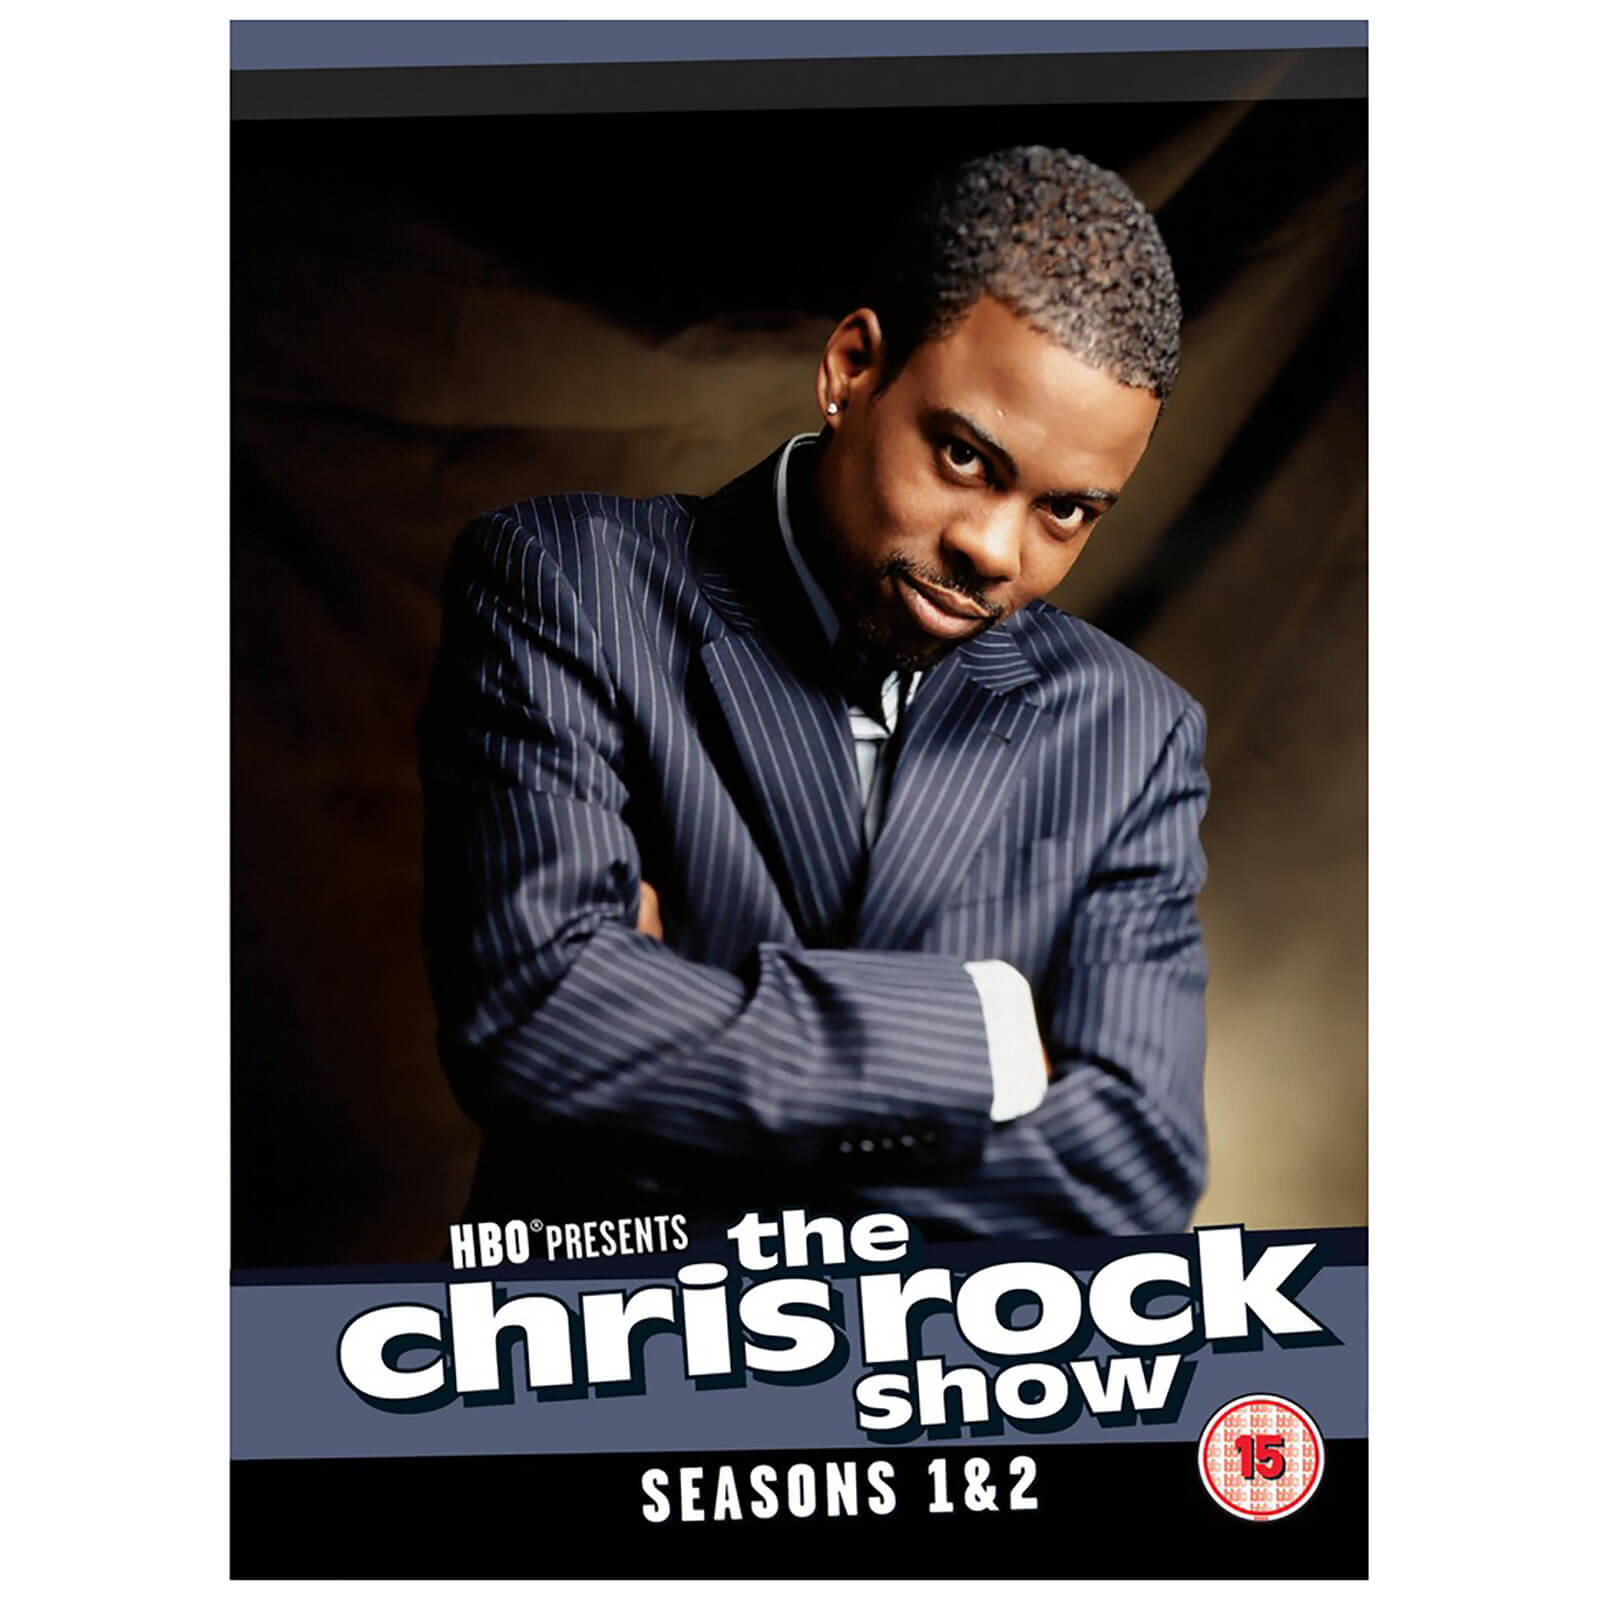 The Chris Rock Show - Die komplette erste und zweite Staffel von HBO